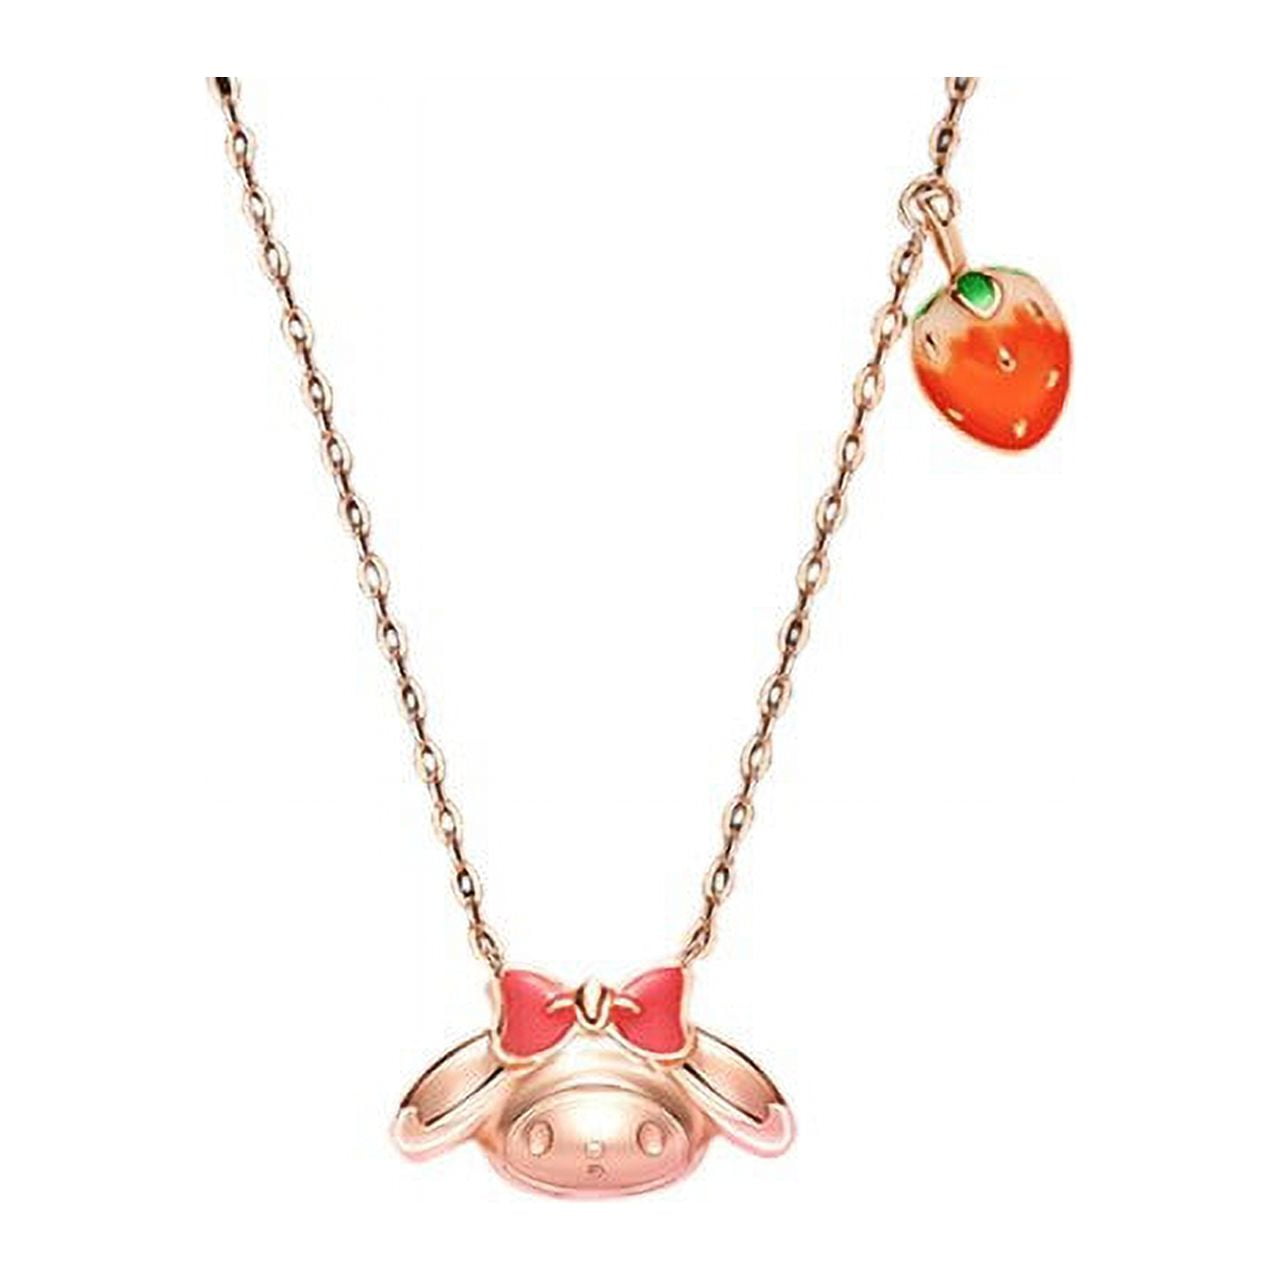 NEW Sanrio Ornaments My Melody Fashion Cute Trendy Girl Necklace Jewelry With Chain Alloy Strawberry Pendant Women s Accessories c594528a 47e6 4795 8080 d83d9d3c2a2d.9326fcd48e46c24e3455e1cf6f72971b